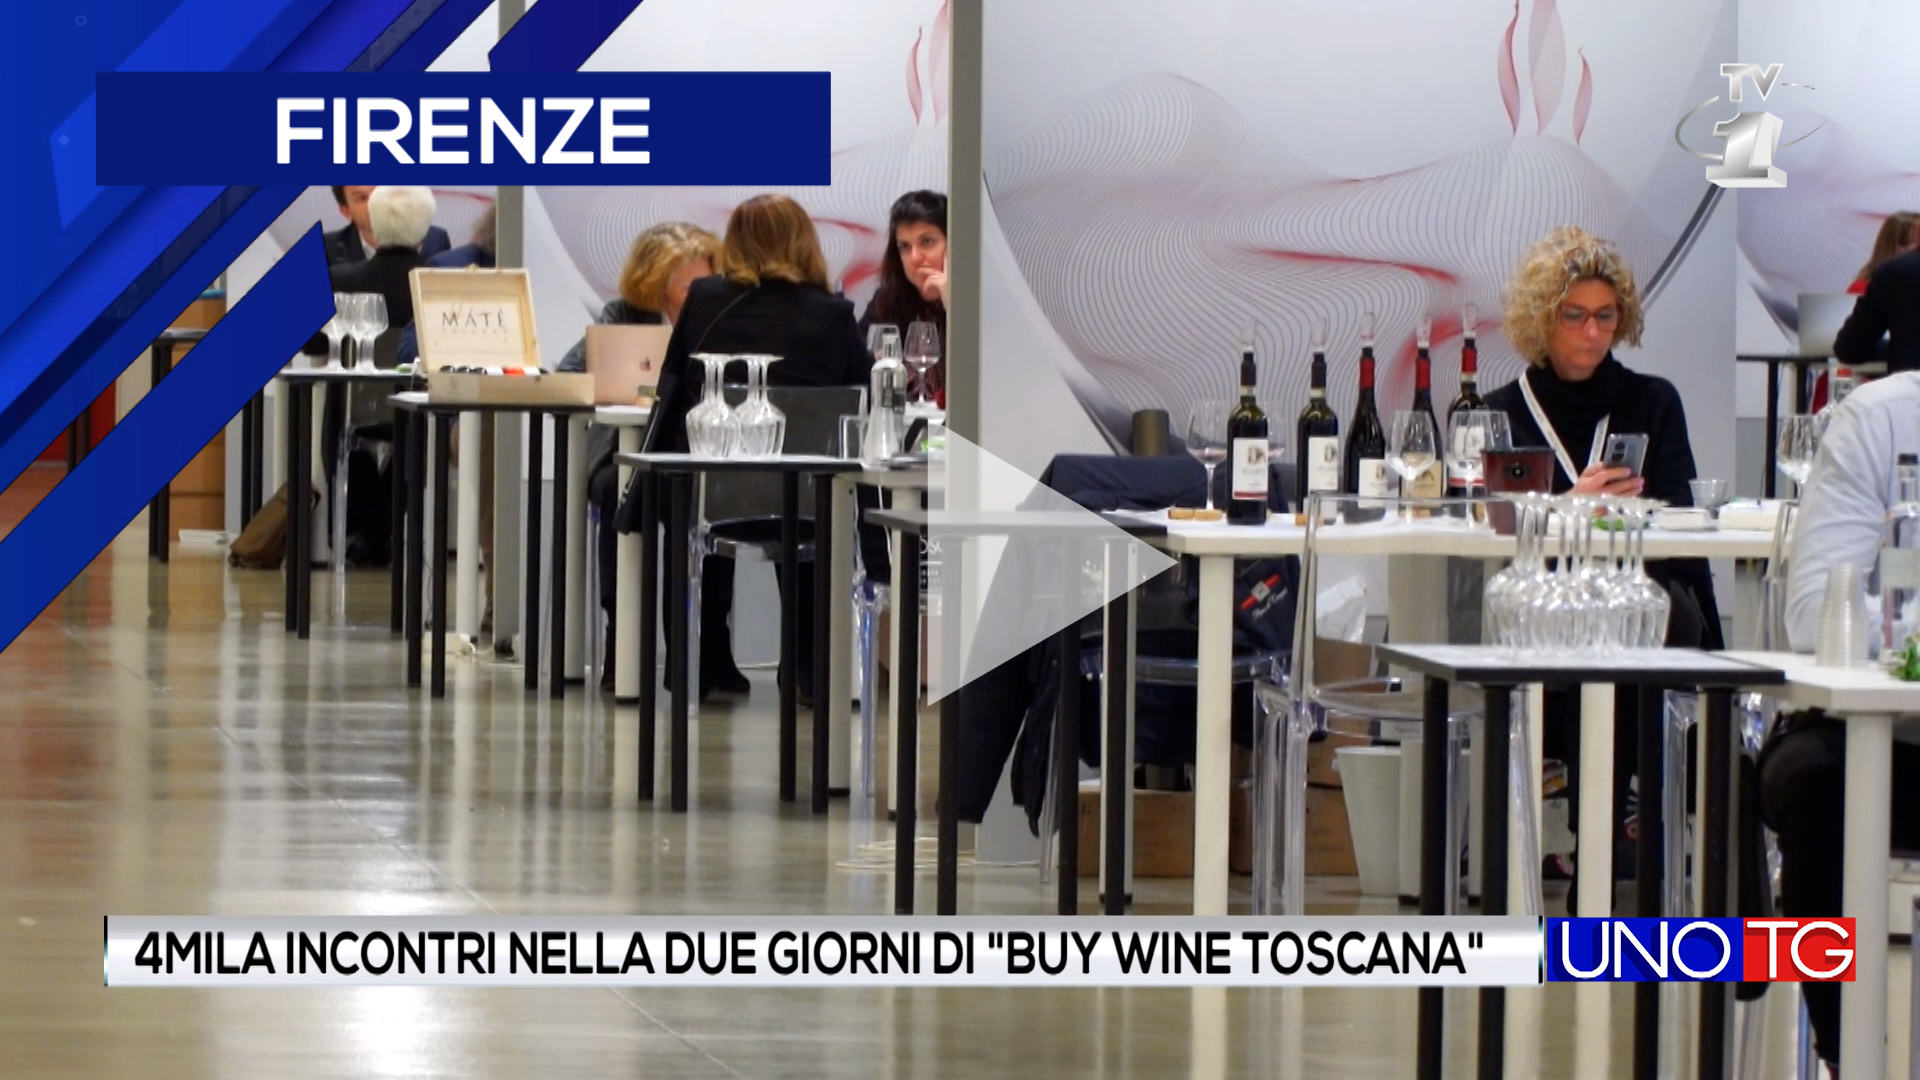 4mila incontri nella due giorni di "Buy wine Toscana"